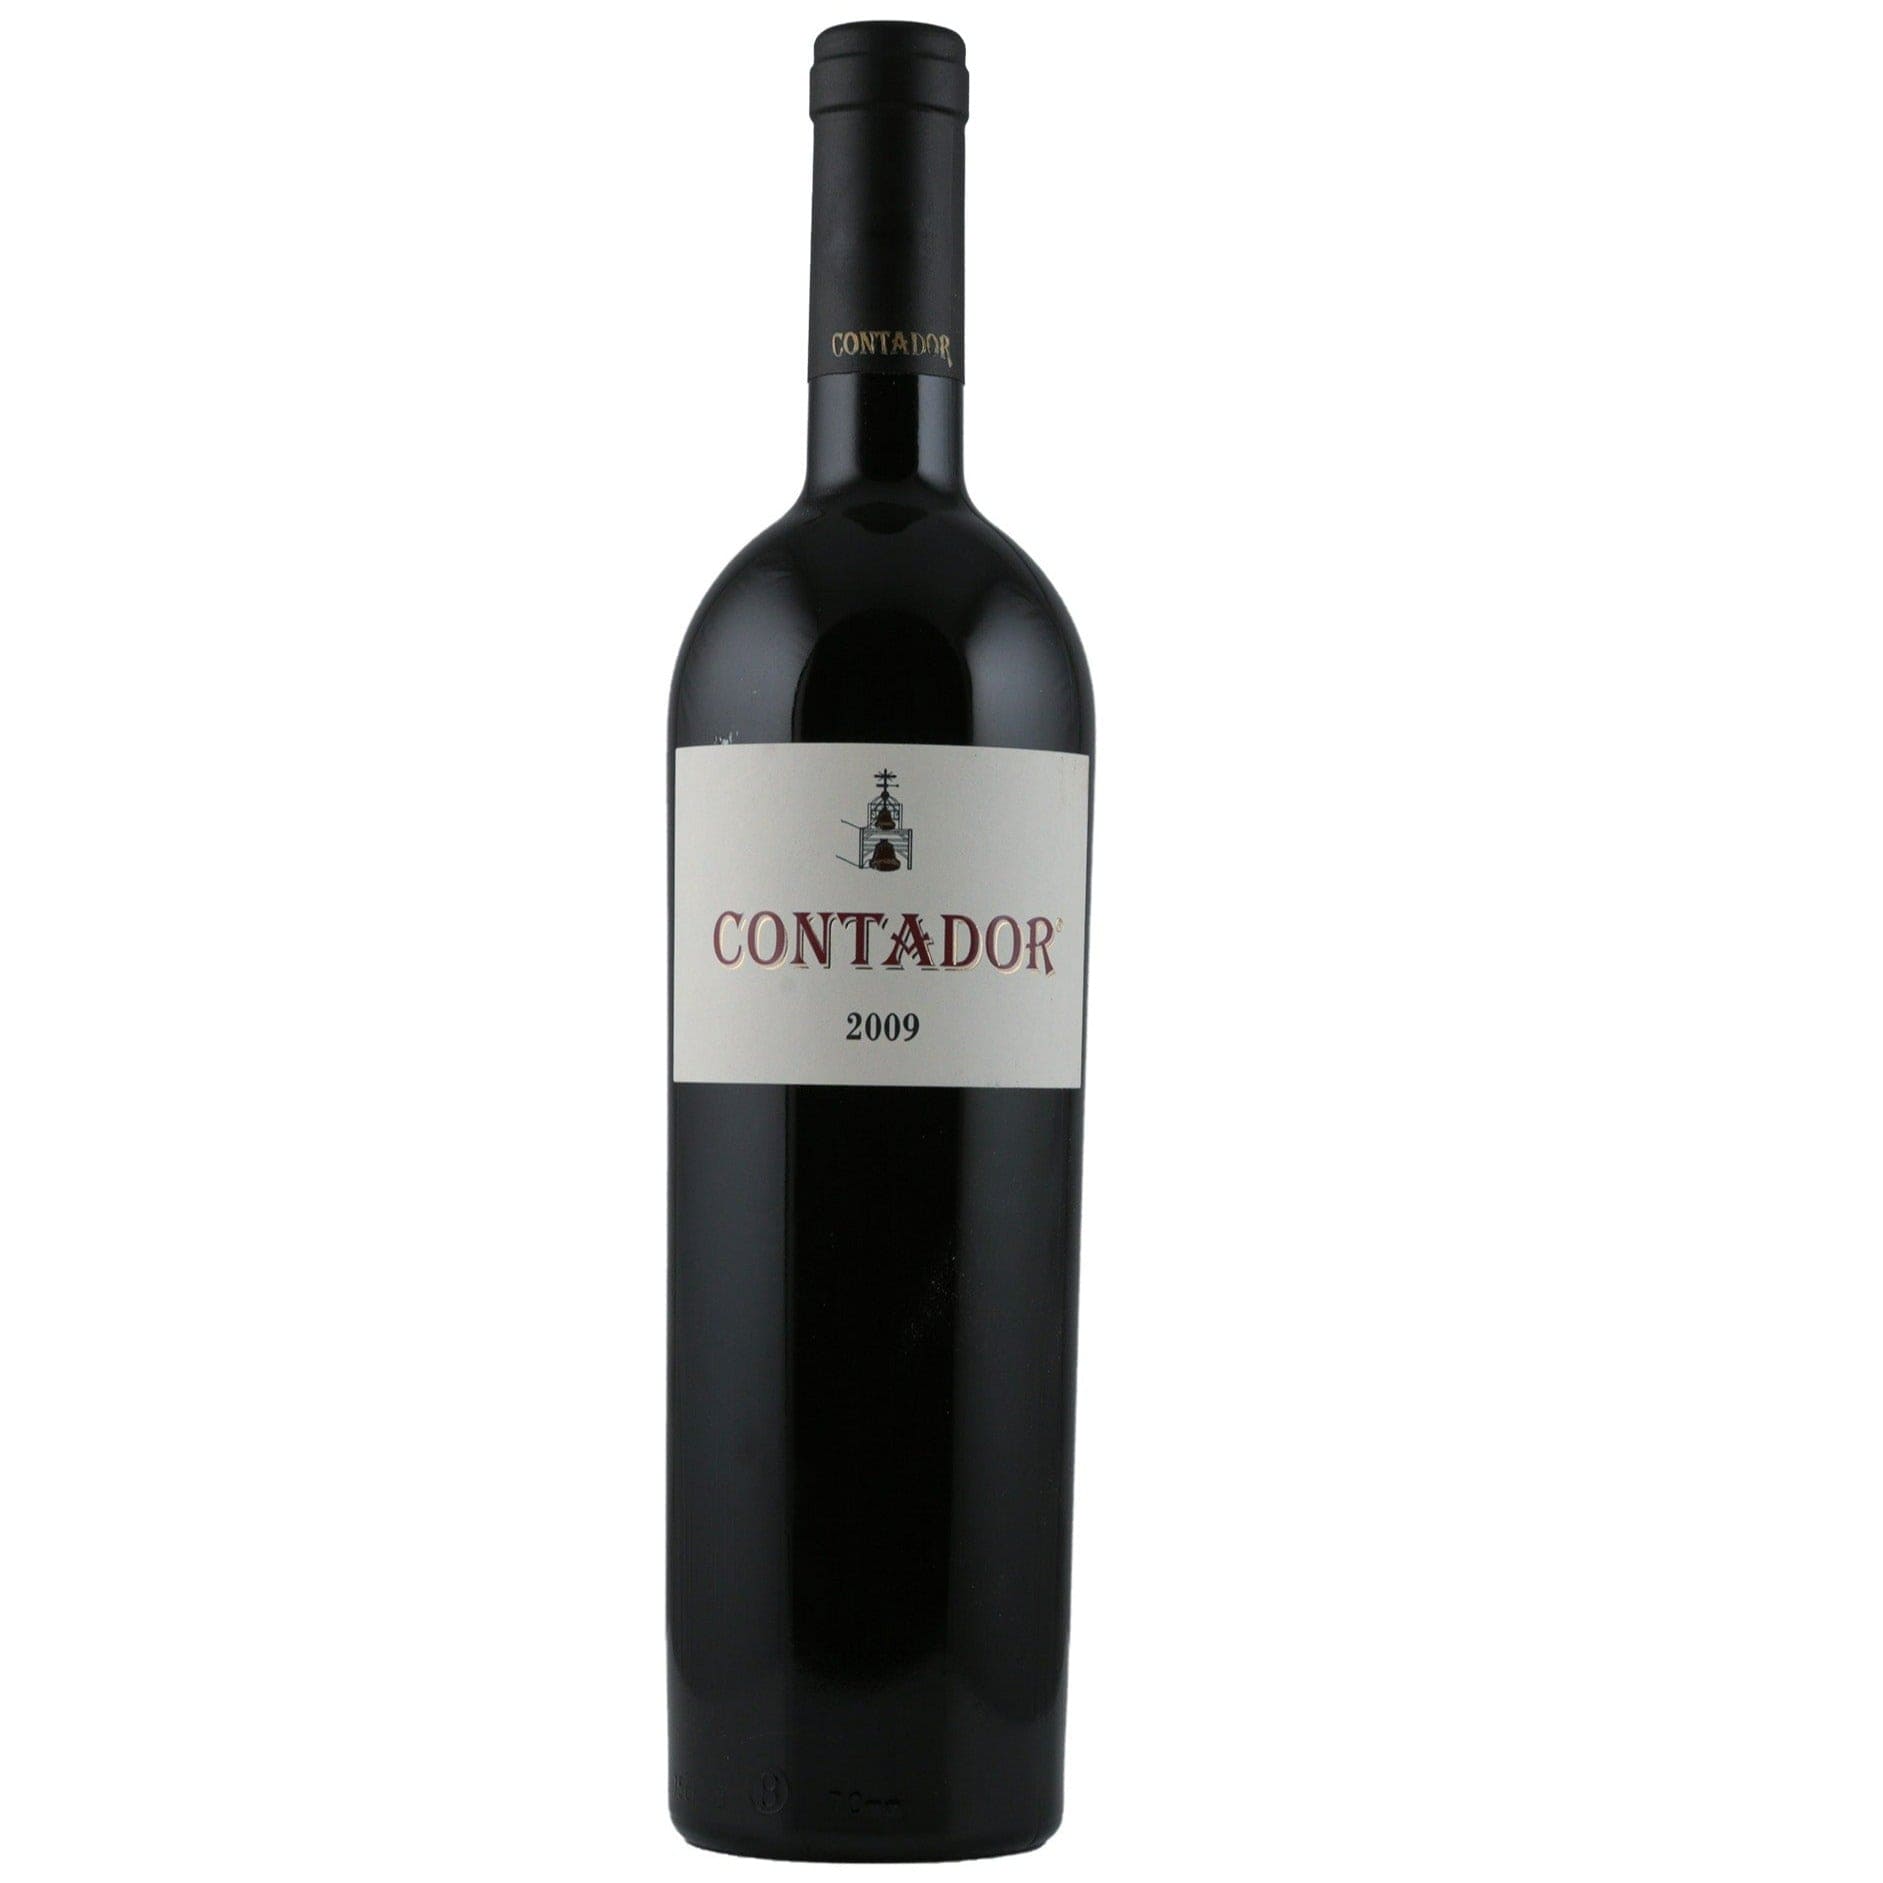 Single bottle of Red wine Bodegas Contador, Benjamin Romeo Contador, Rioja Alta, 2009 Tempranillo blend